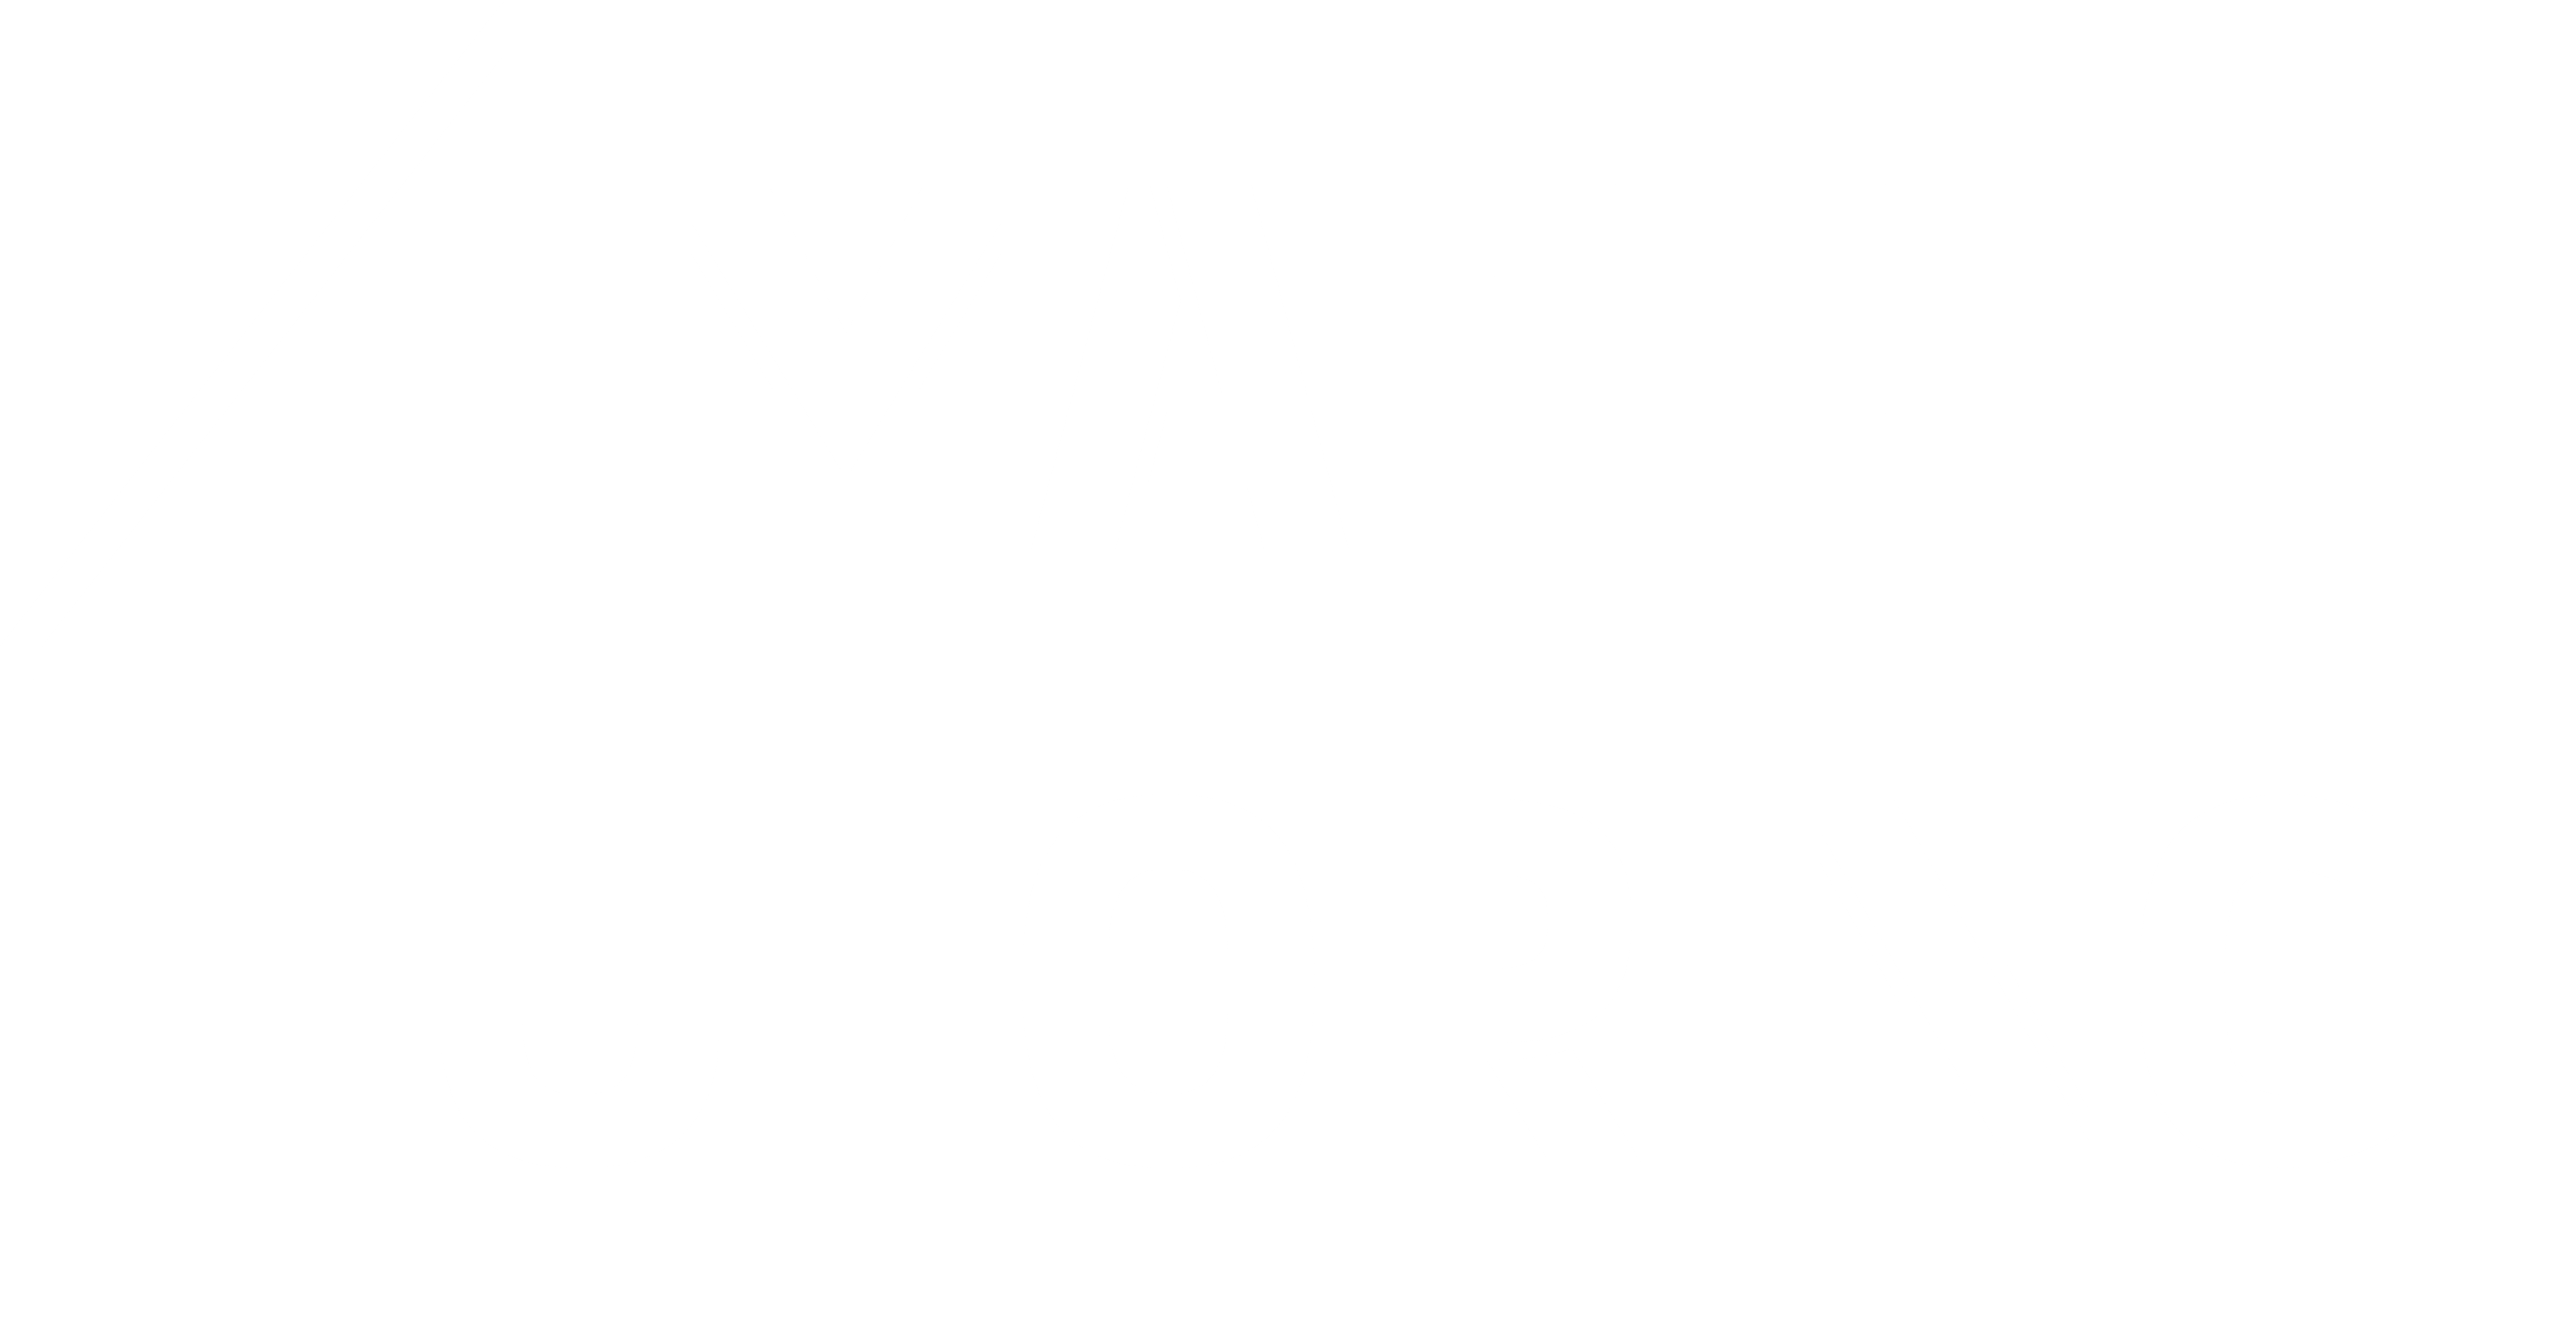 MATH TUTORING és un programa de tutoria i enriquiment matemàtic que combina la tutoria presencial en petit grup amb una plataforma en línia. La seva finalitat és acompanyar en l’aprenentatge de les matemàtiques a aquells alumnes que més ho necessiten.